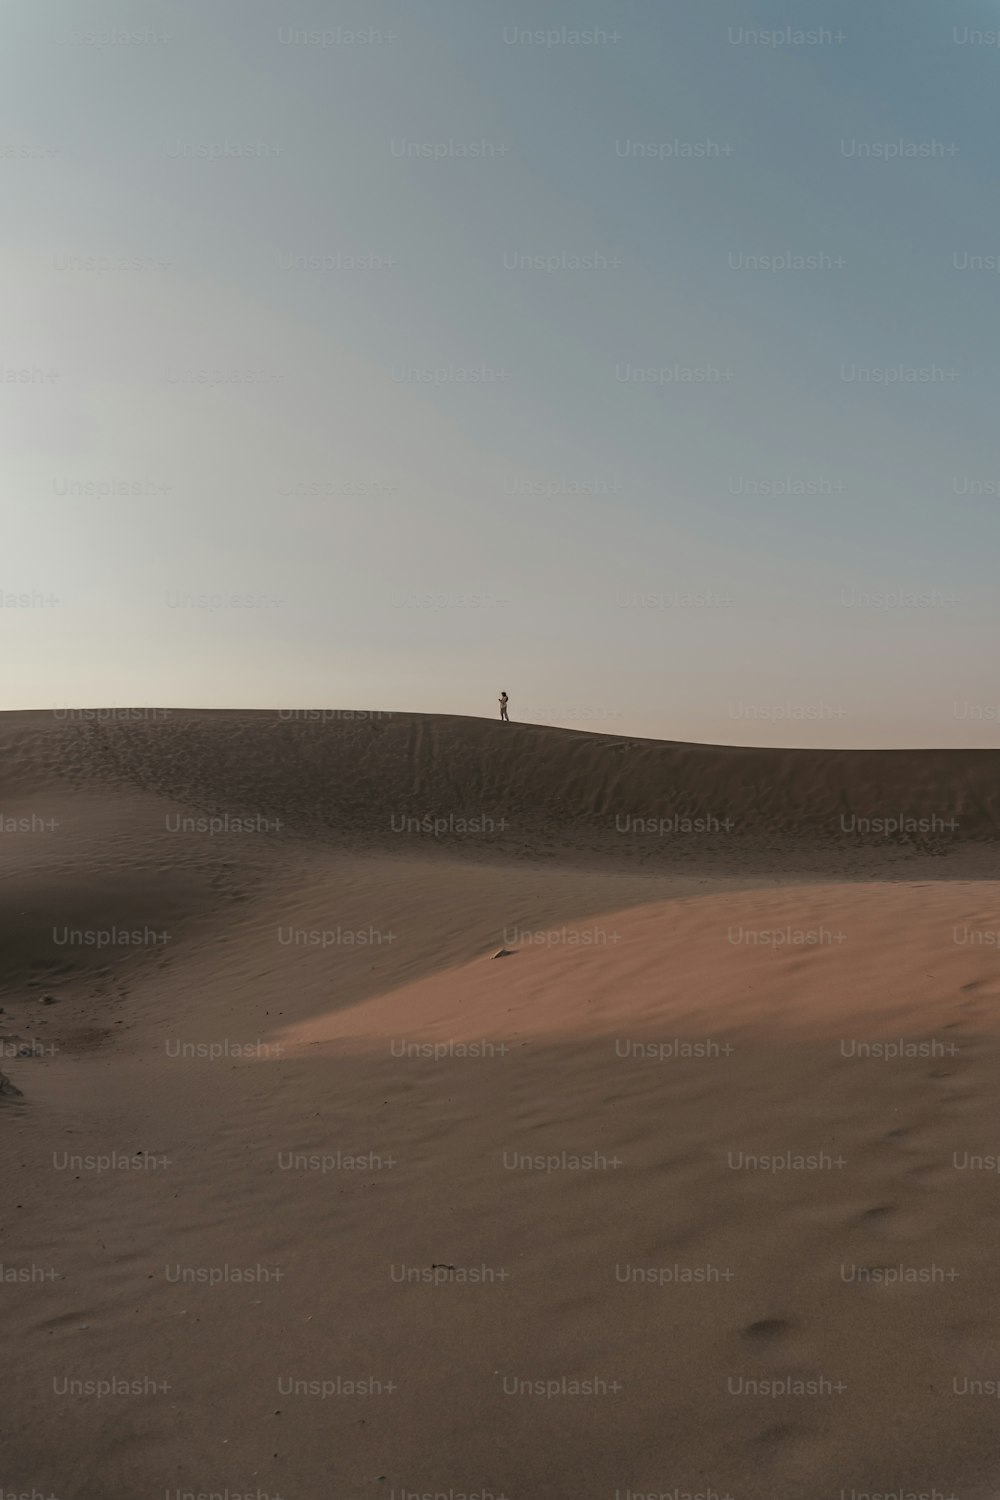 Una persona in piedi sulla cima di una duna di sabbia